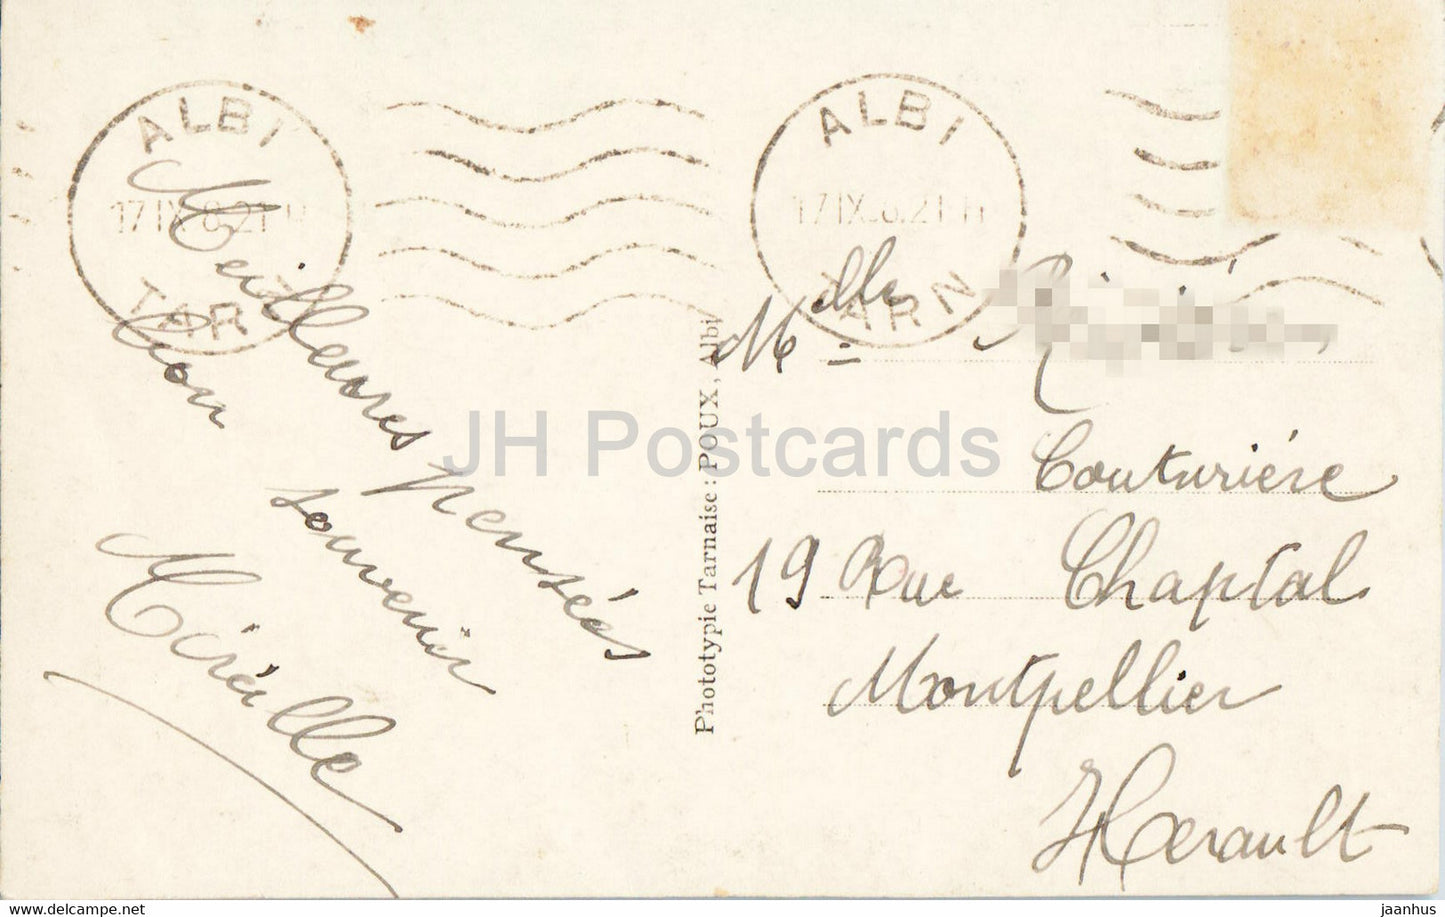 Albi - Viaduc du Chemin de Fer et Cathédrale - cathédrale - 28 - carte postale ancienne - 1921 - France - occasion